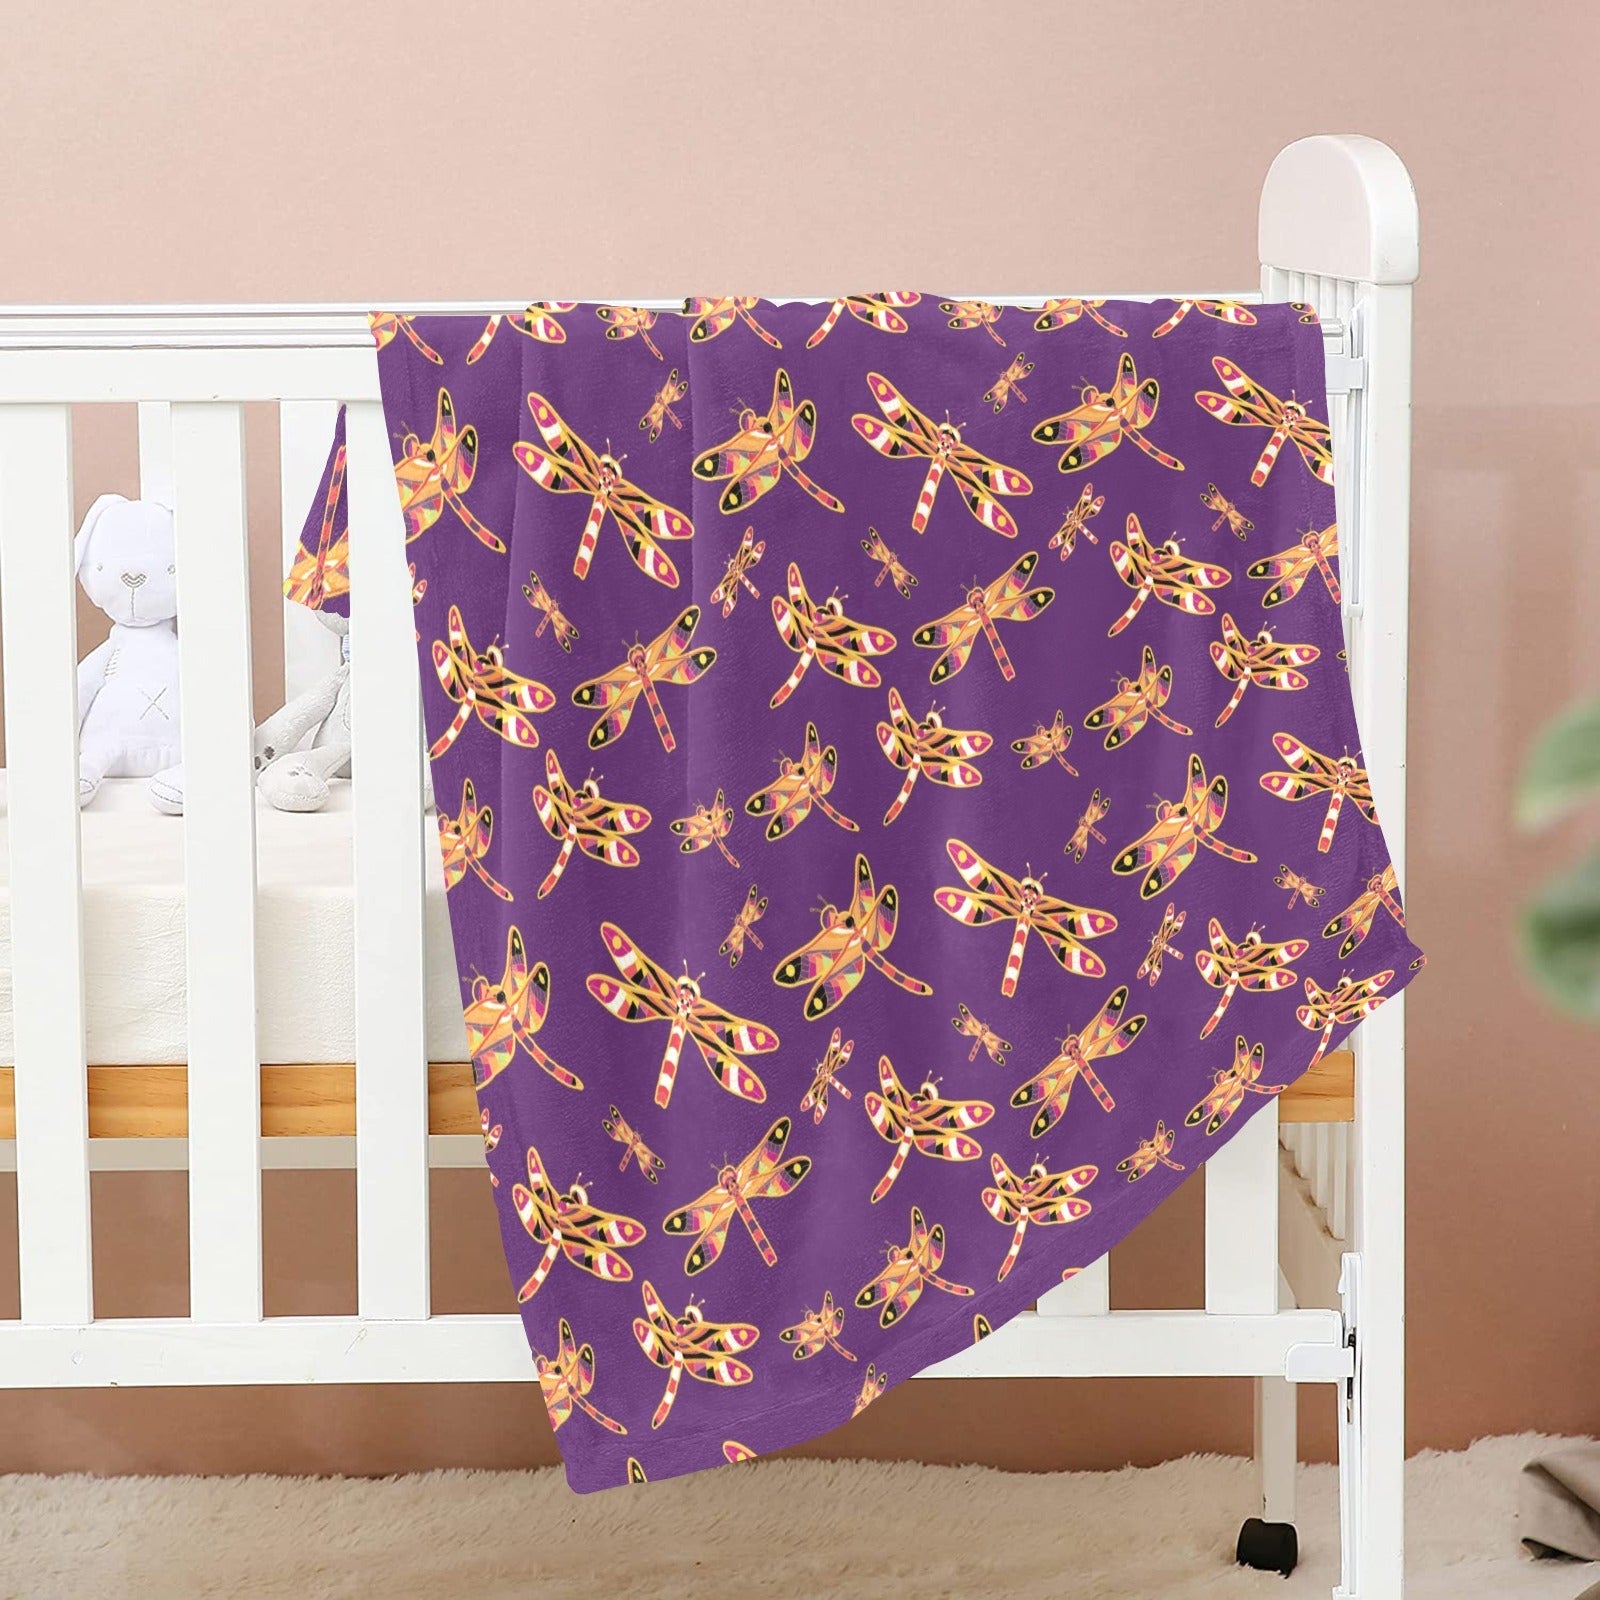 Gathering Yellow Purple Baby Blanket 40"x50" Baby Blanket 40"x50" e-joyer 